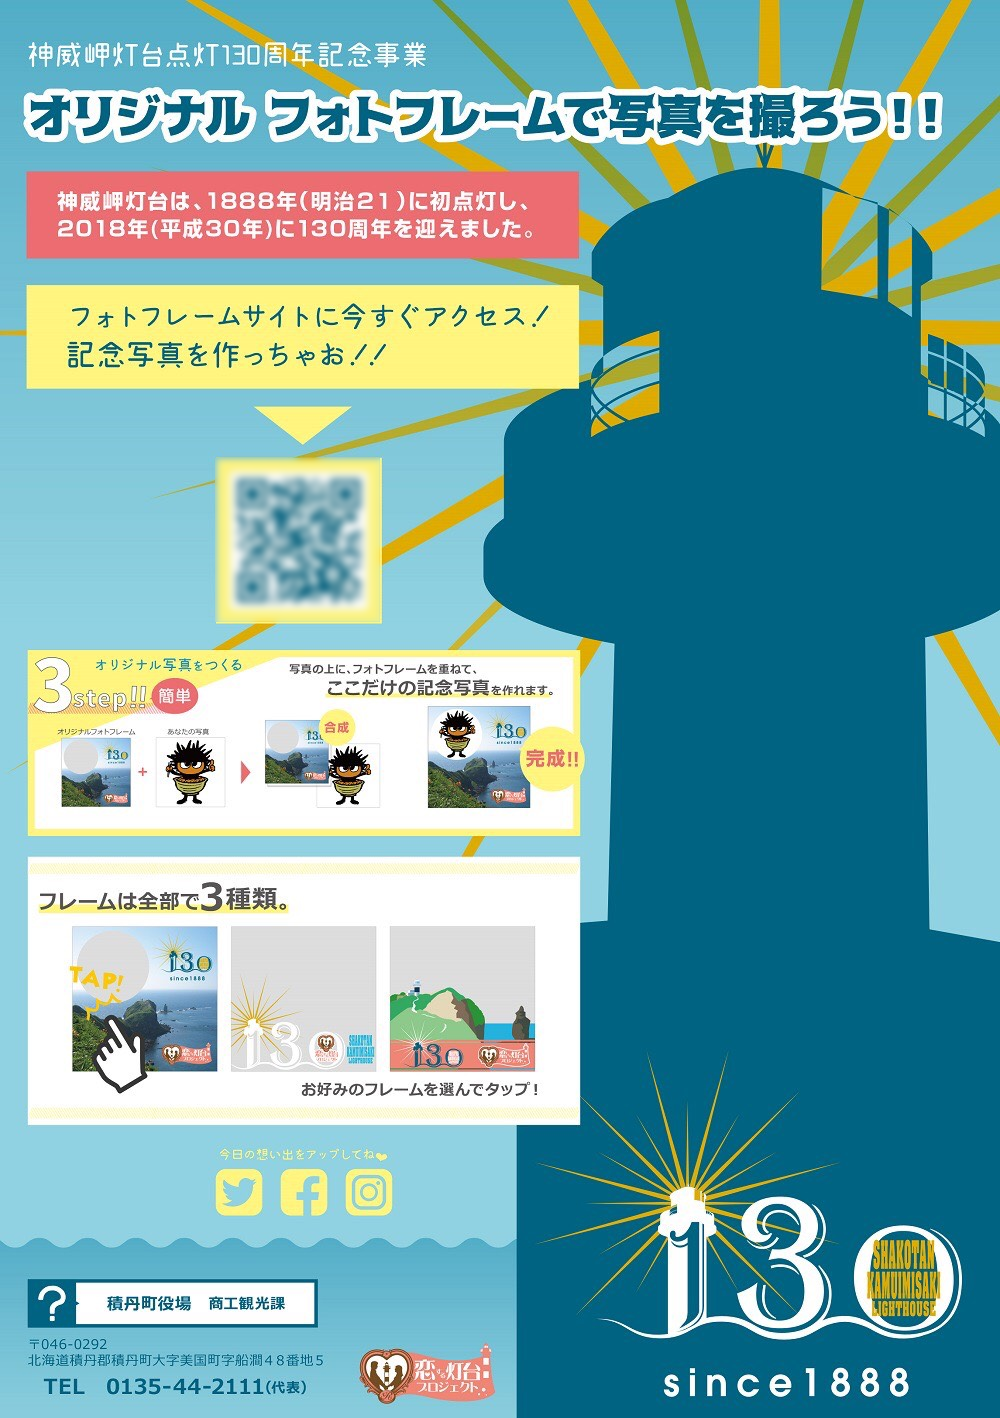 神威岬灯台点灯130周年記念事業 オリジナルフォトフレームで写真を撮ろう!!.bmp